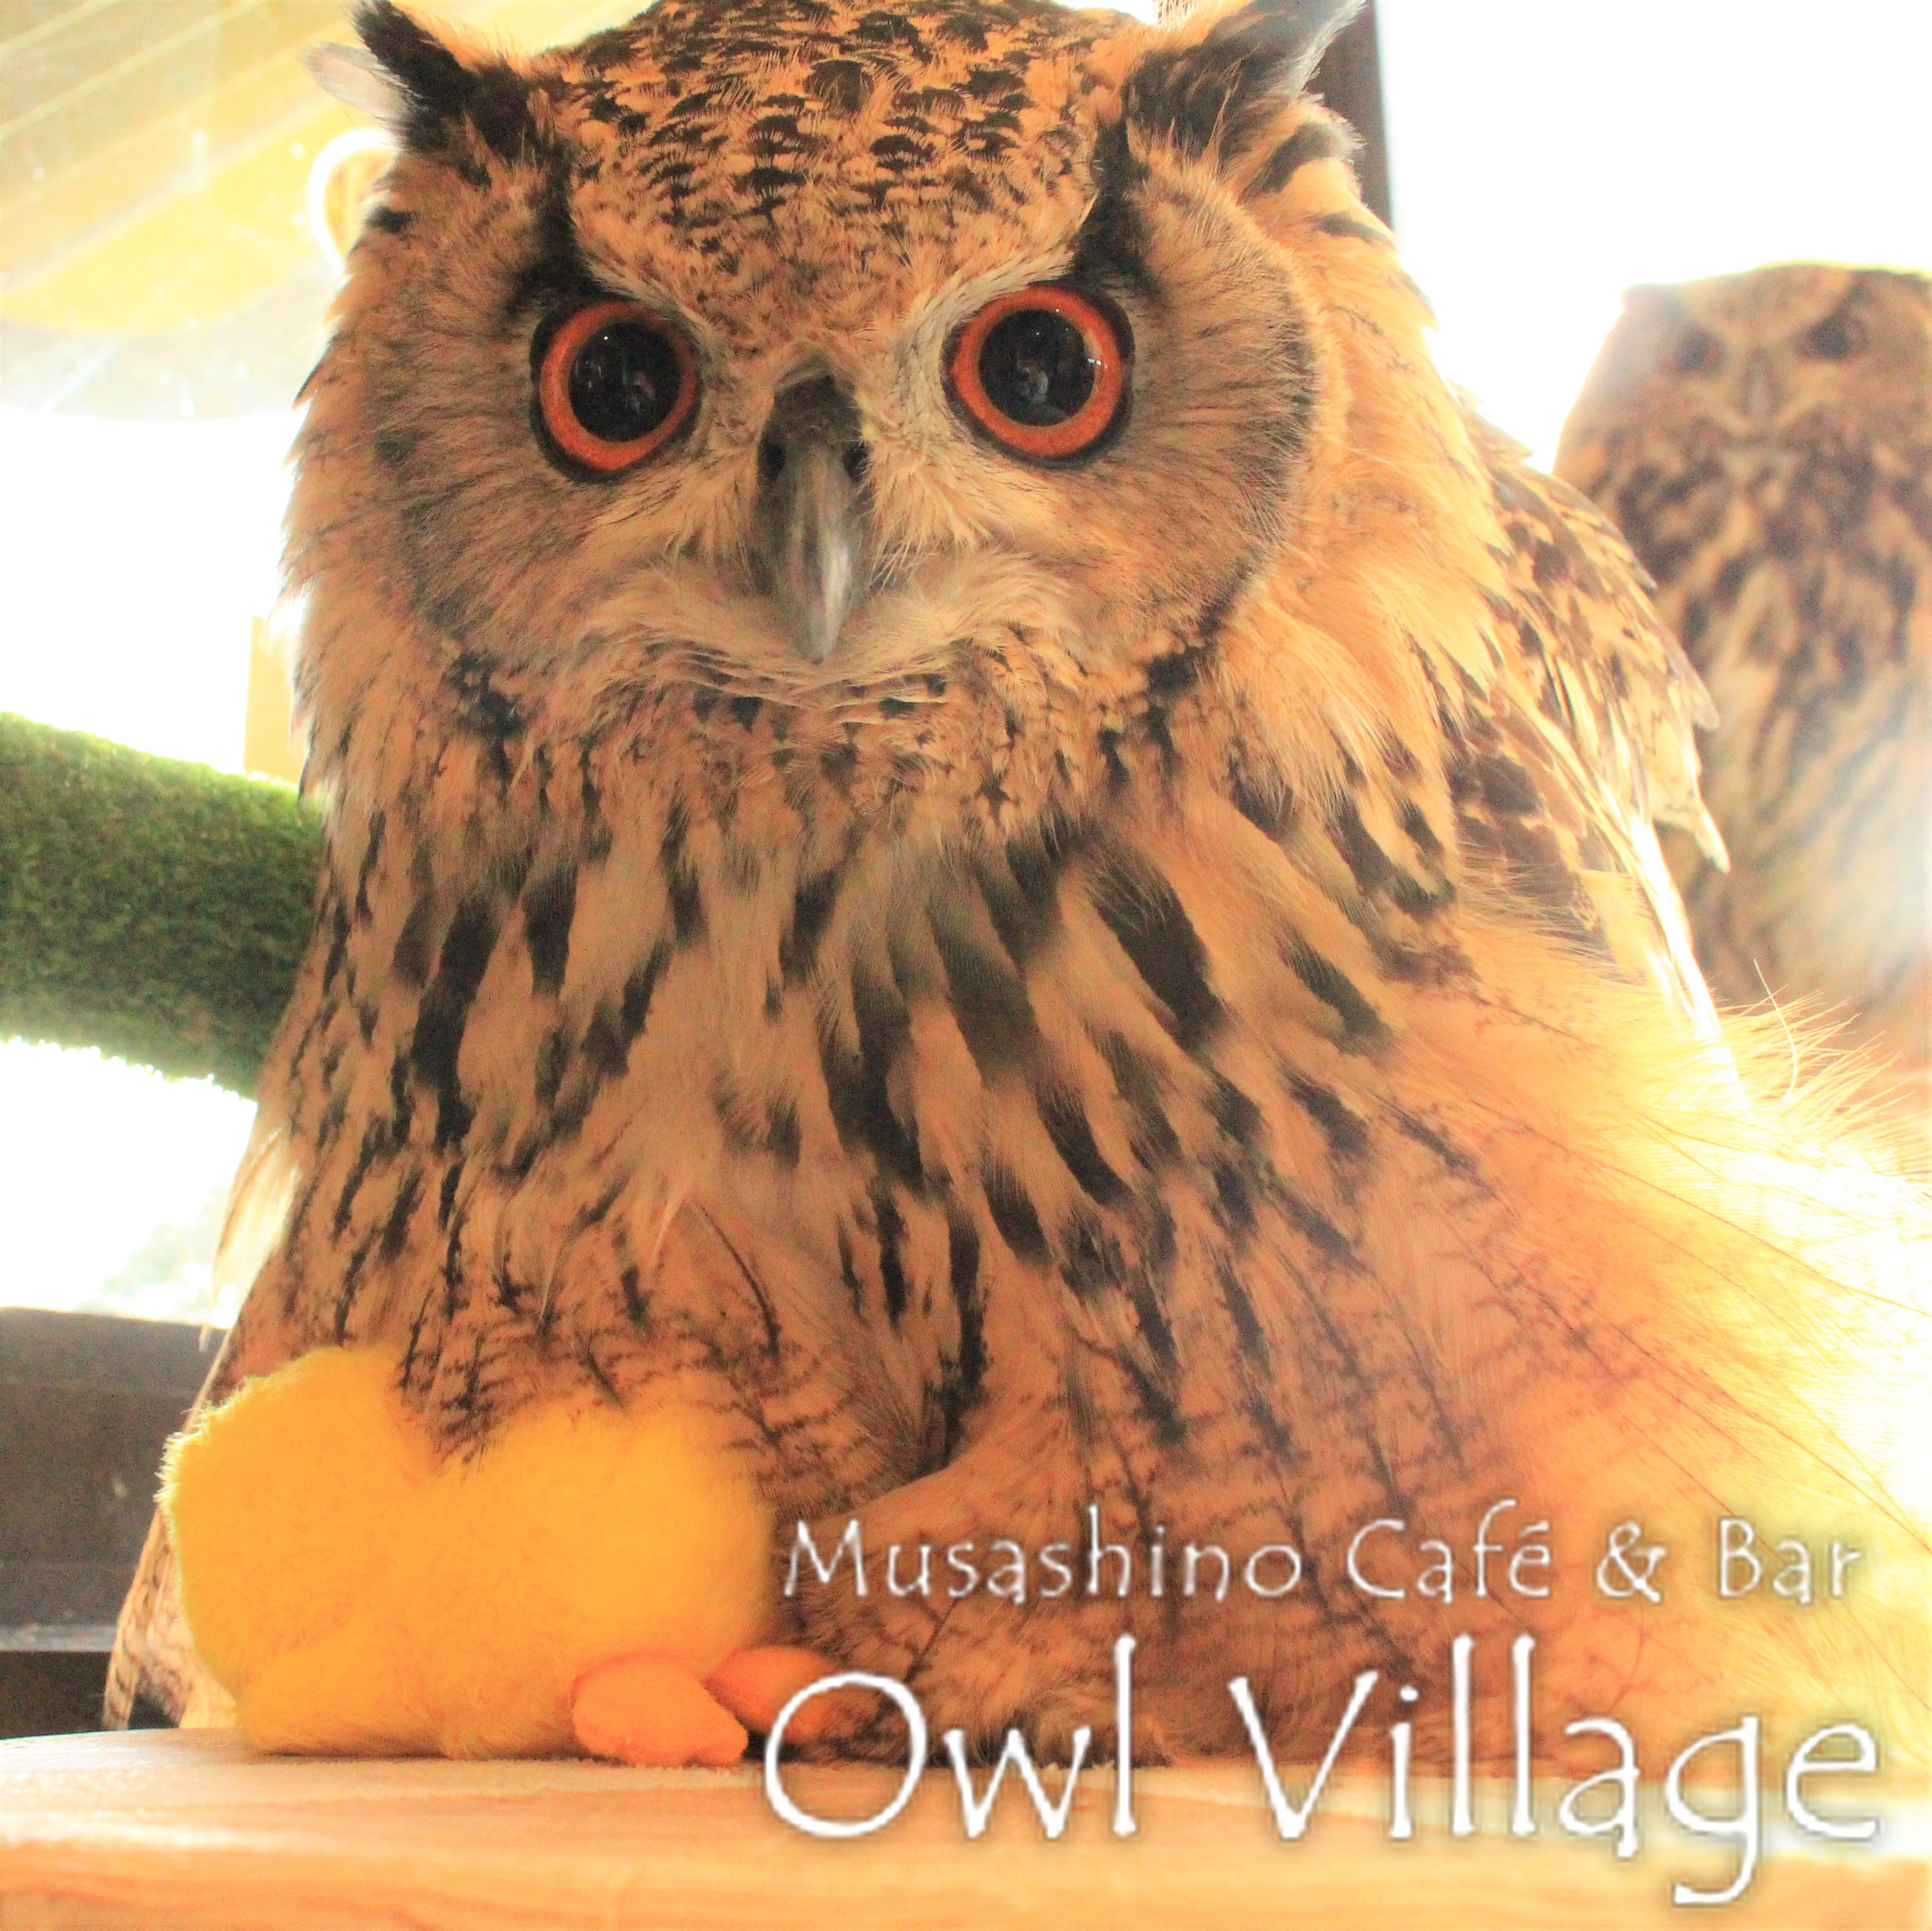 owl cafe harajuku down load free photo 0220 Indian Eagle Owl